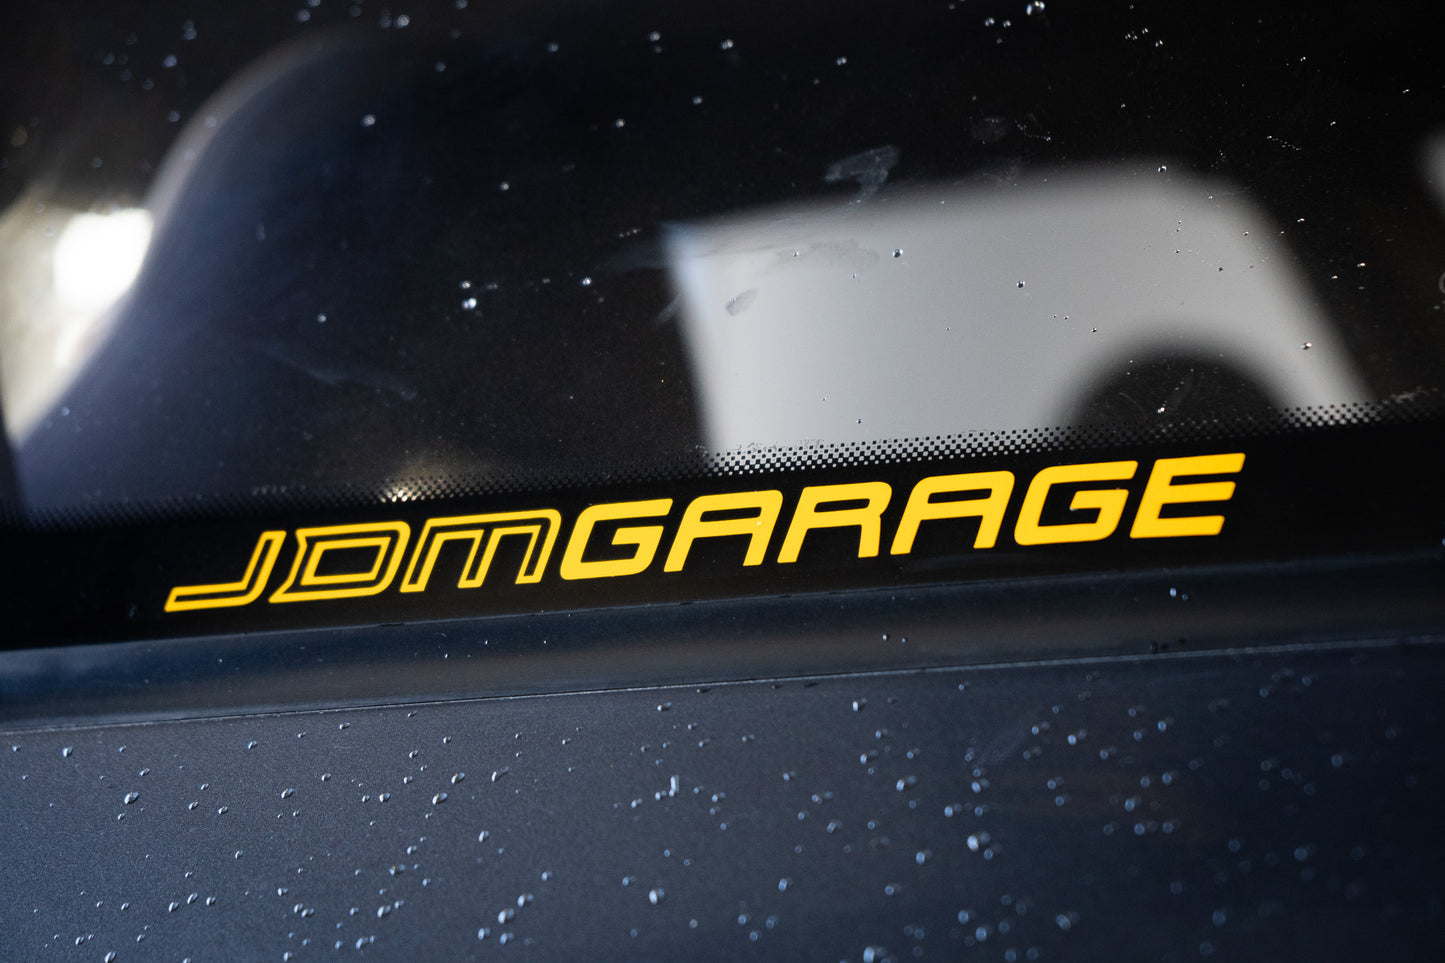 JDM Garage Sticker